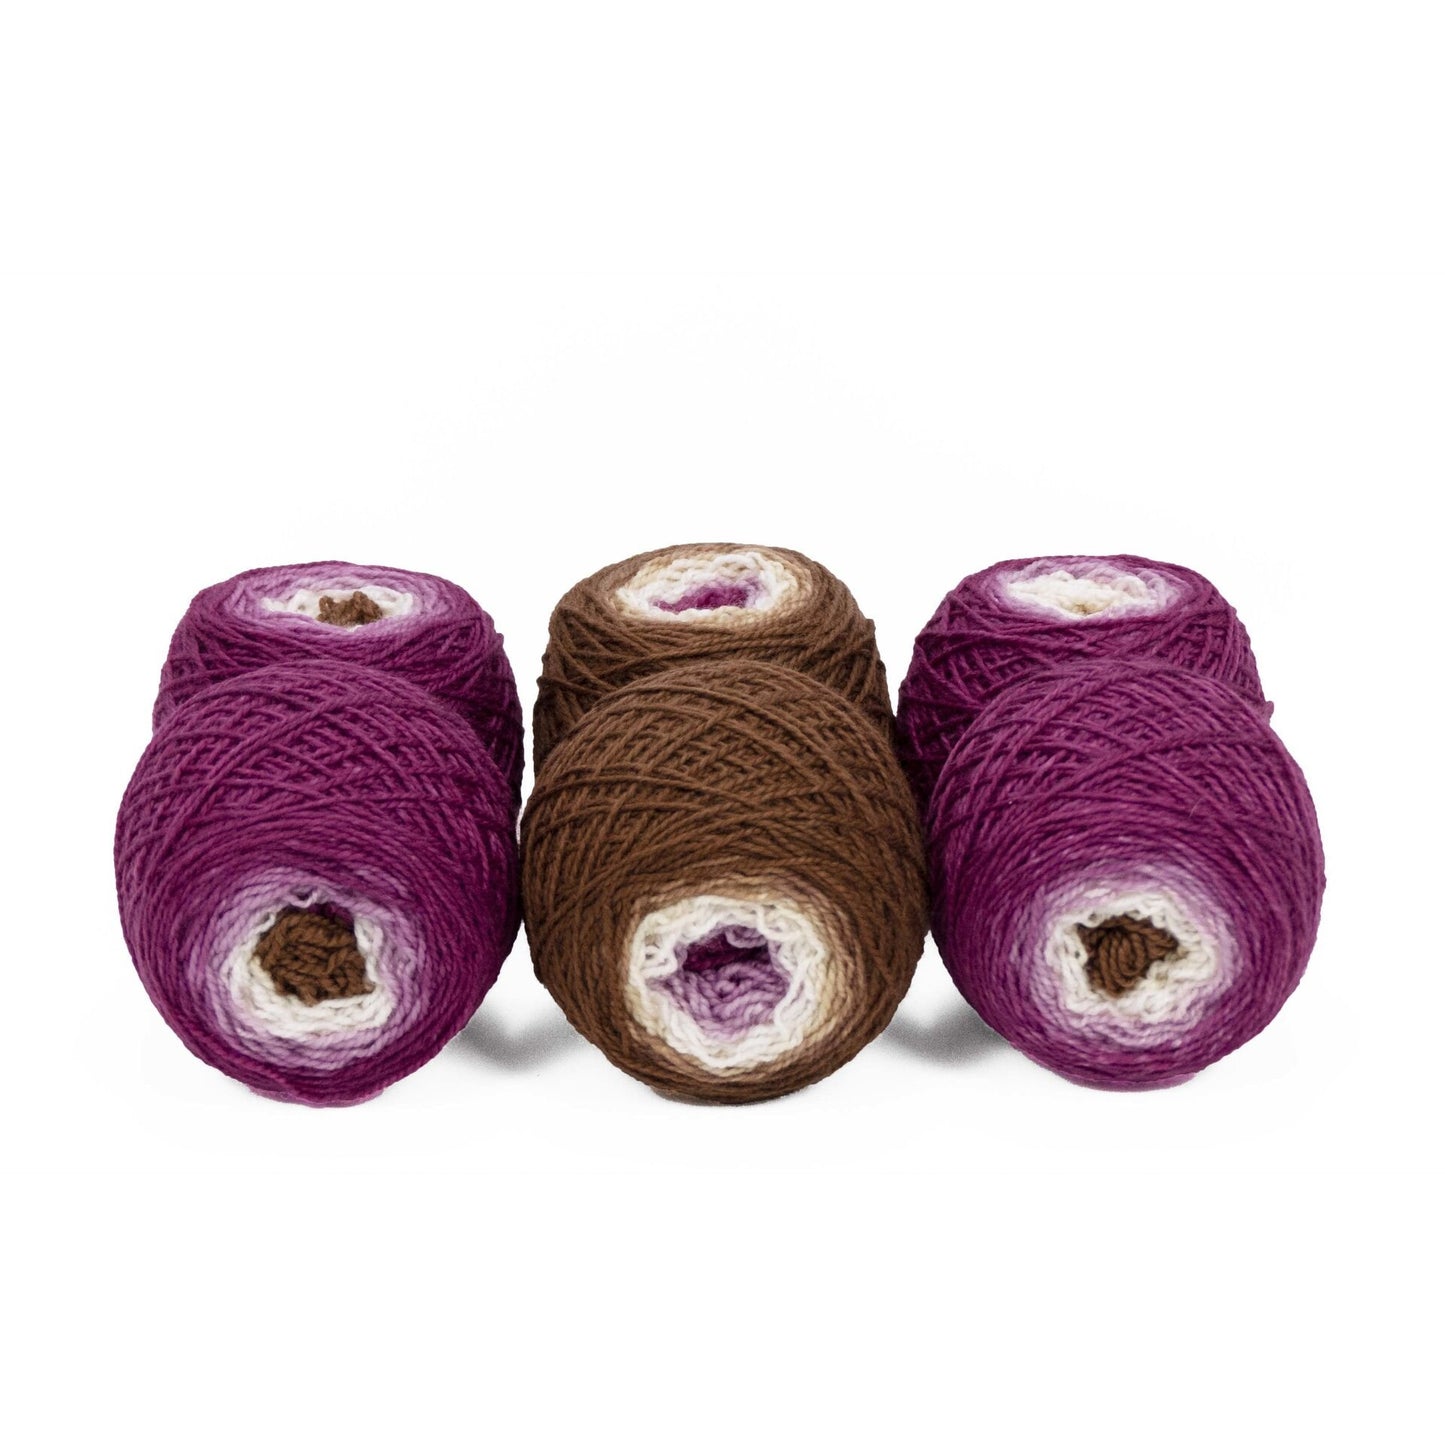 Sock Twins " Venetian Canal " - Lleap SW Merino/Nylon Handpainted Gradient Sock Yarn Set